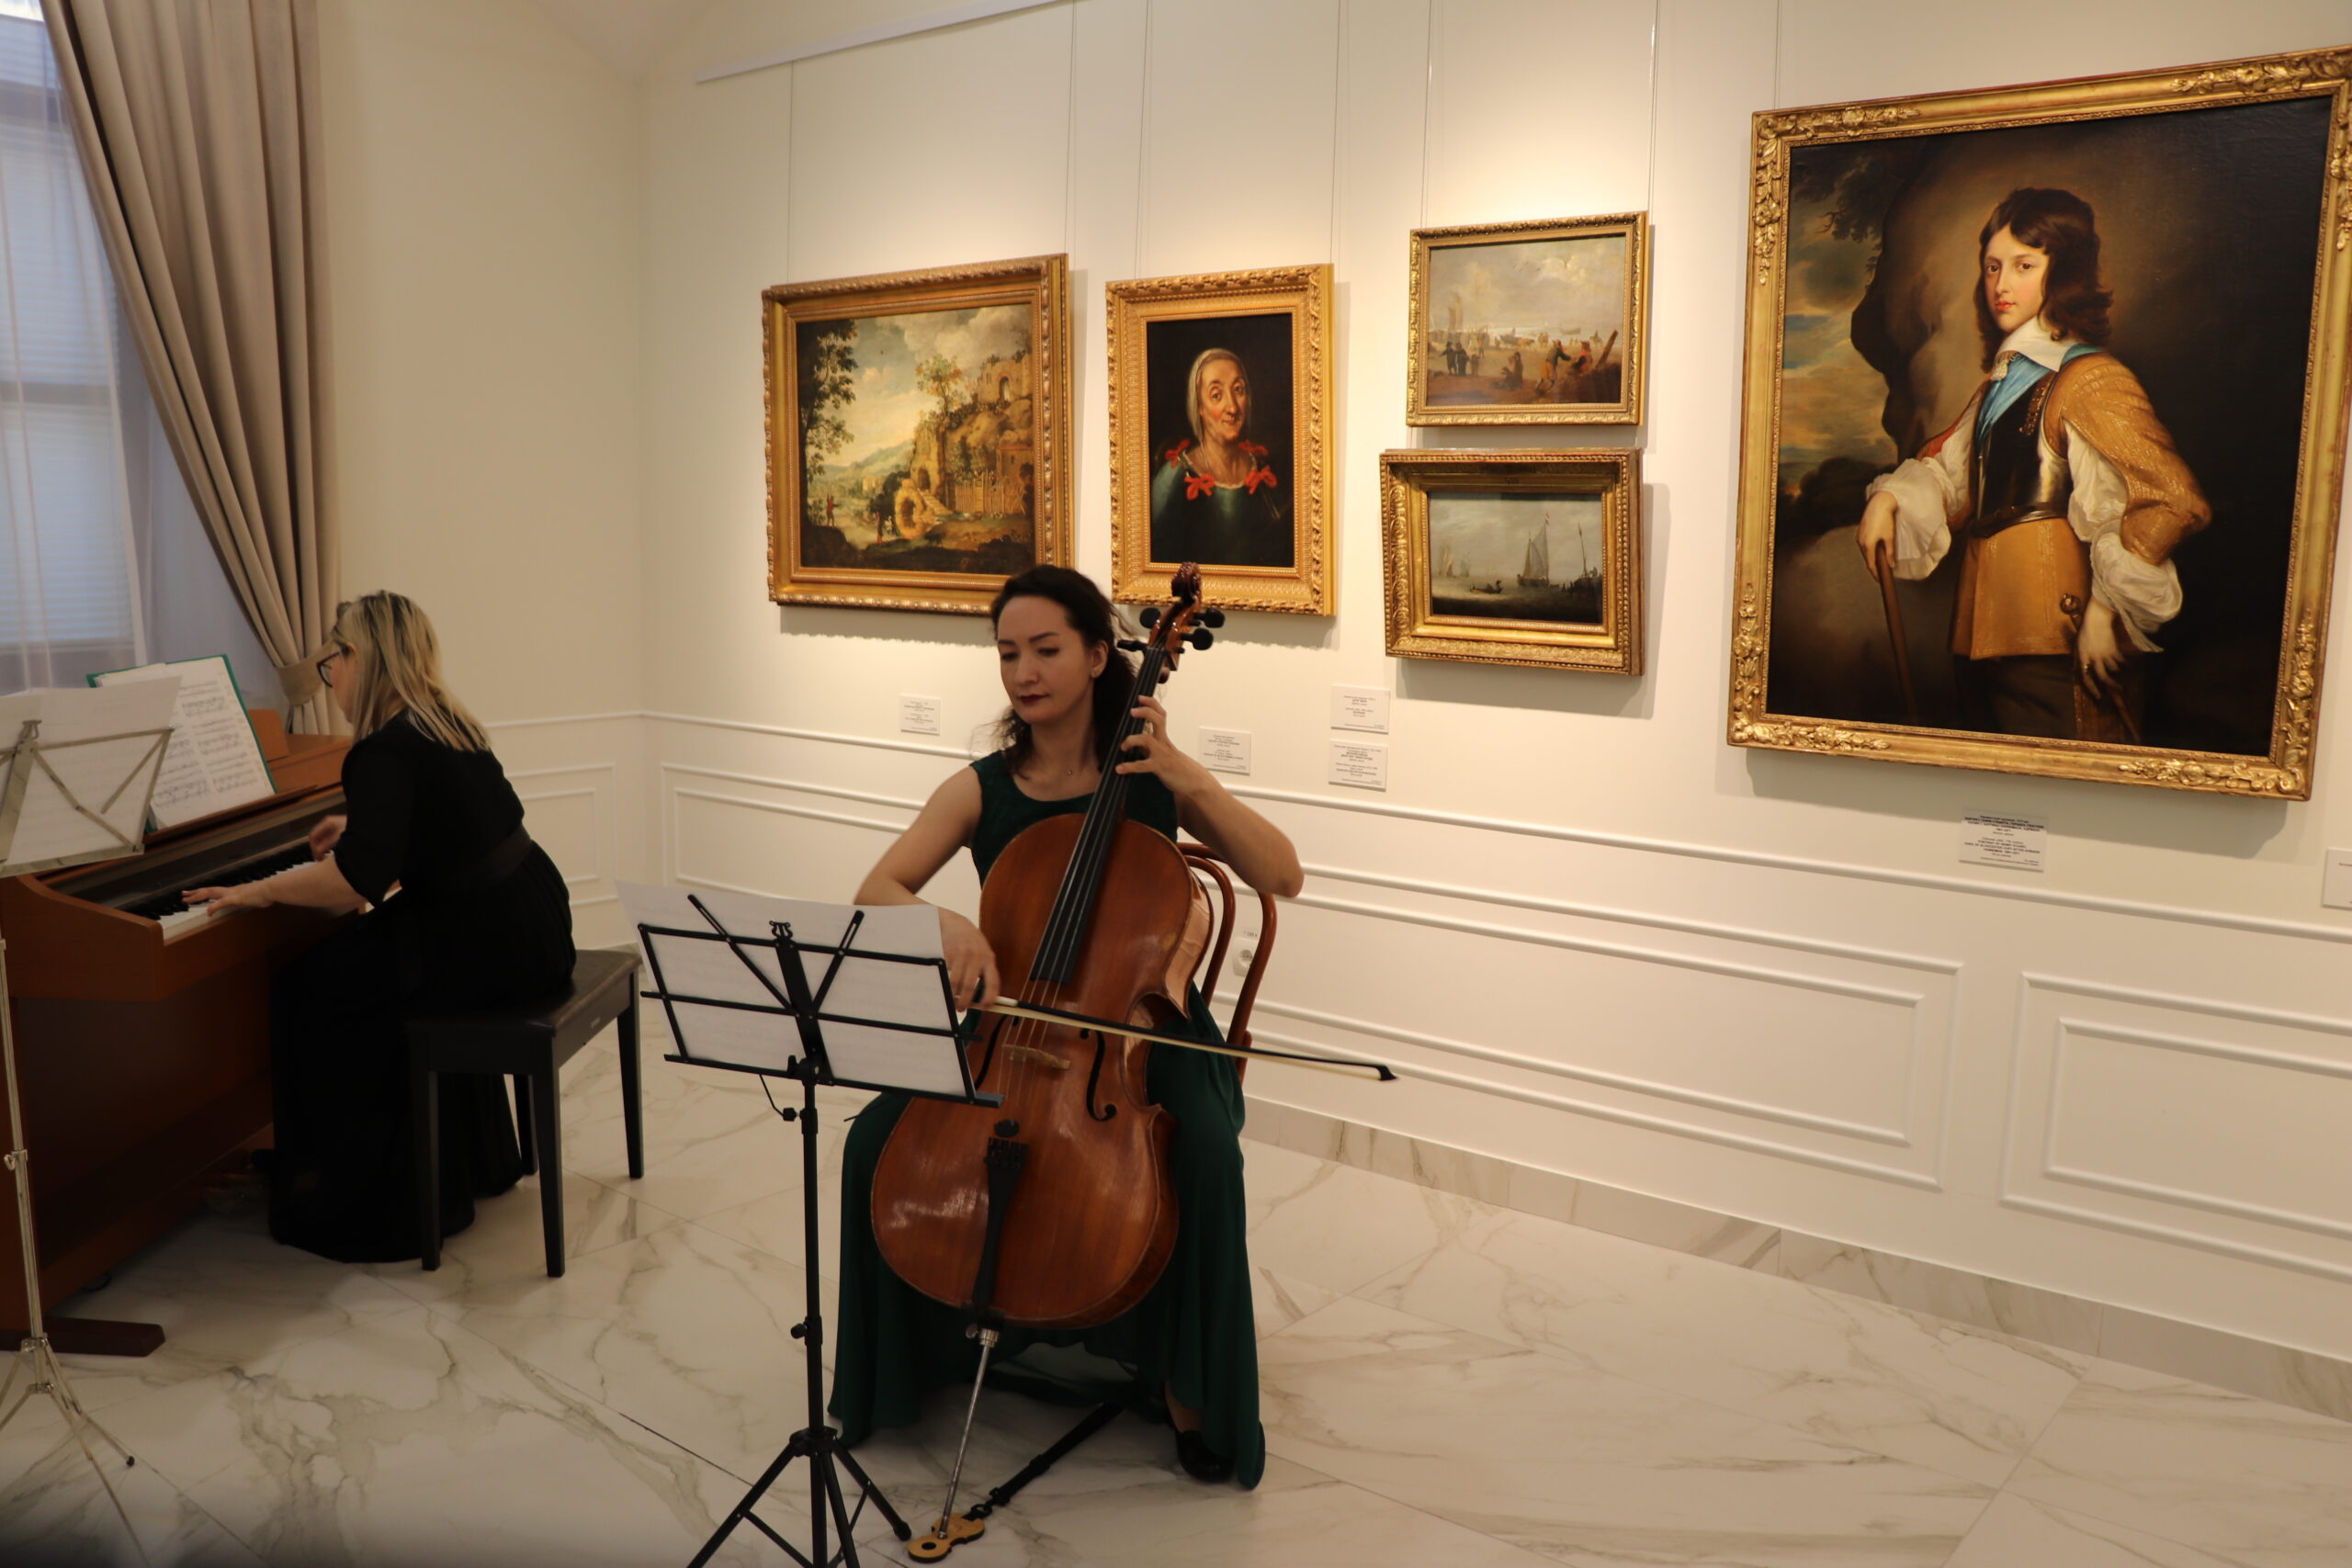 Выставка работ голландских мастеров 17 века открылась в доме казначейства в Якутске